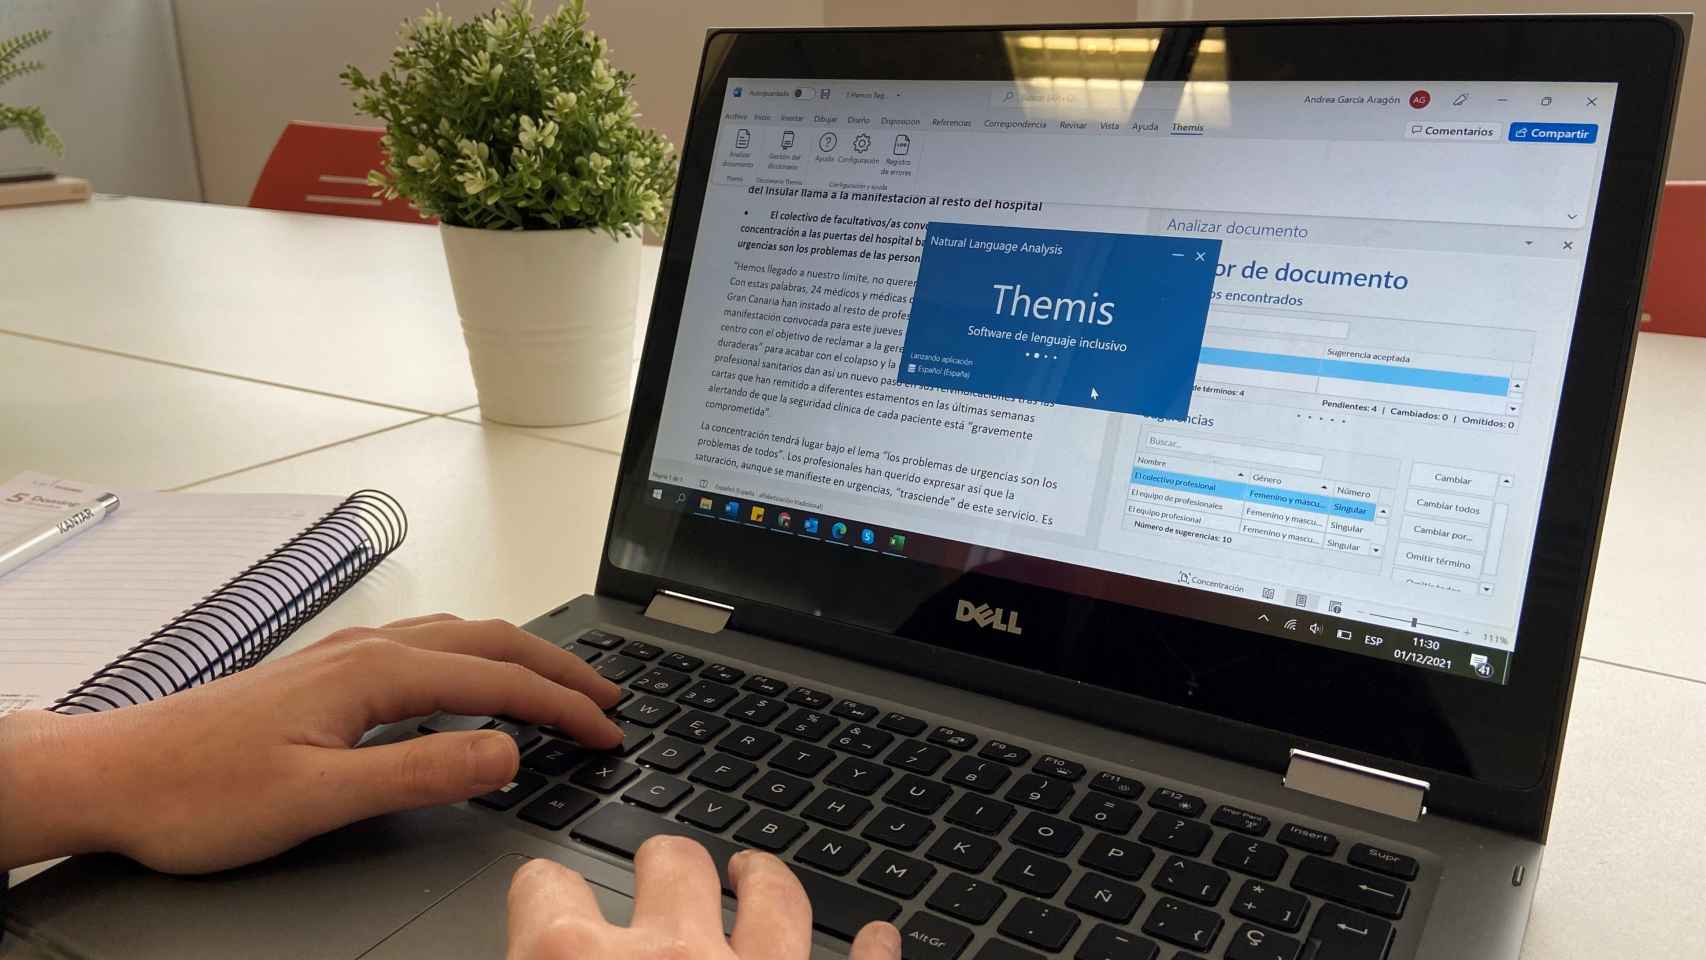 Themis es un software de lenguaje inclusivo creado con tecnología española que ya usa la Generalitat Valenciana.